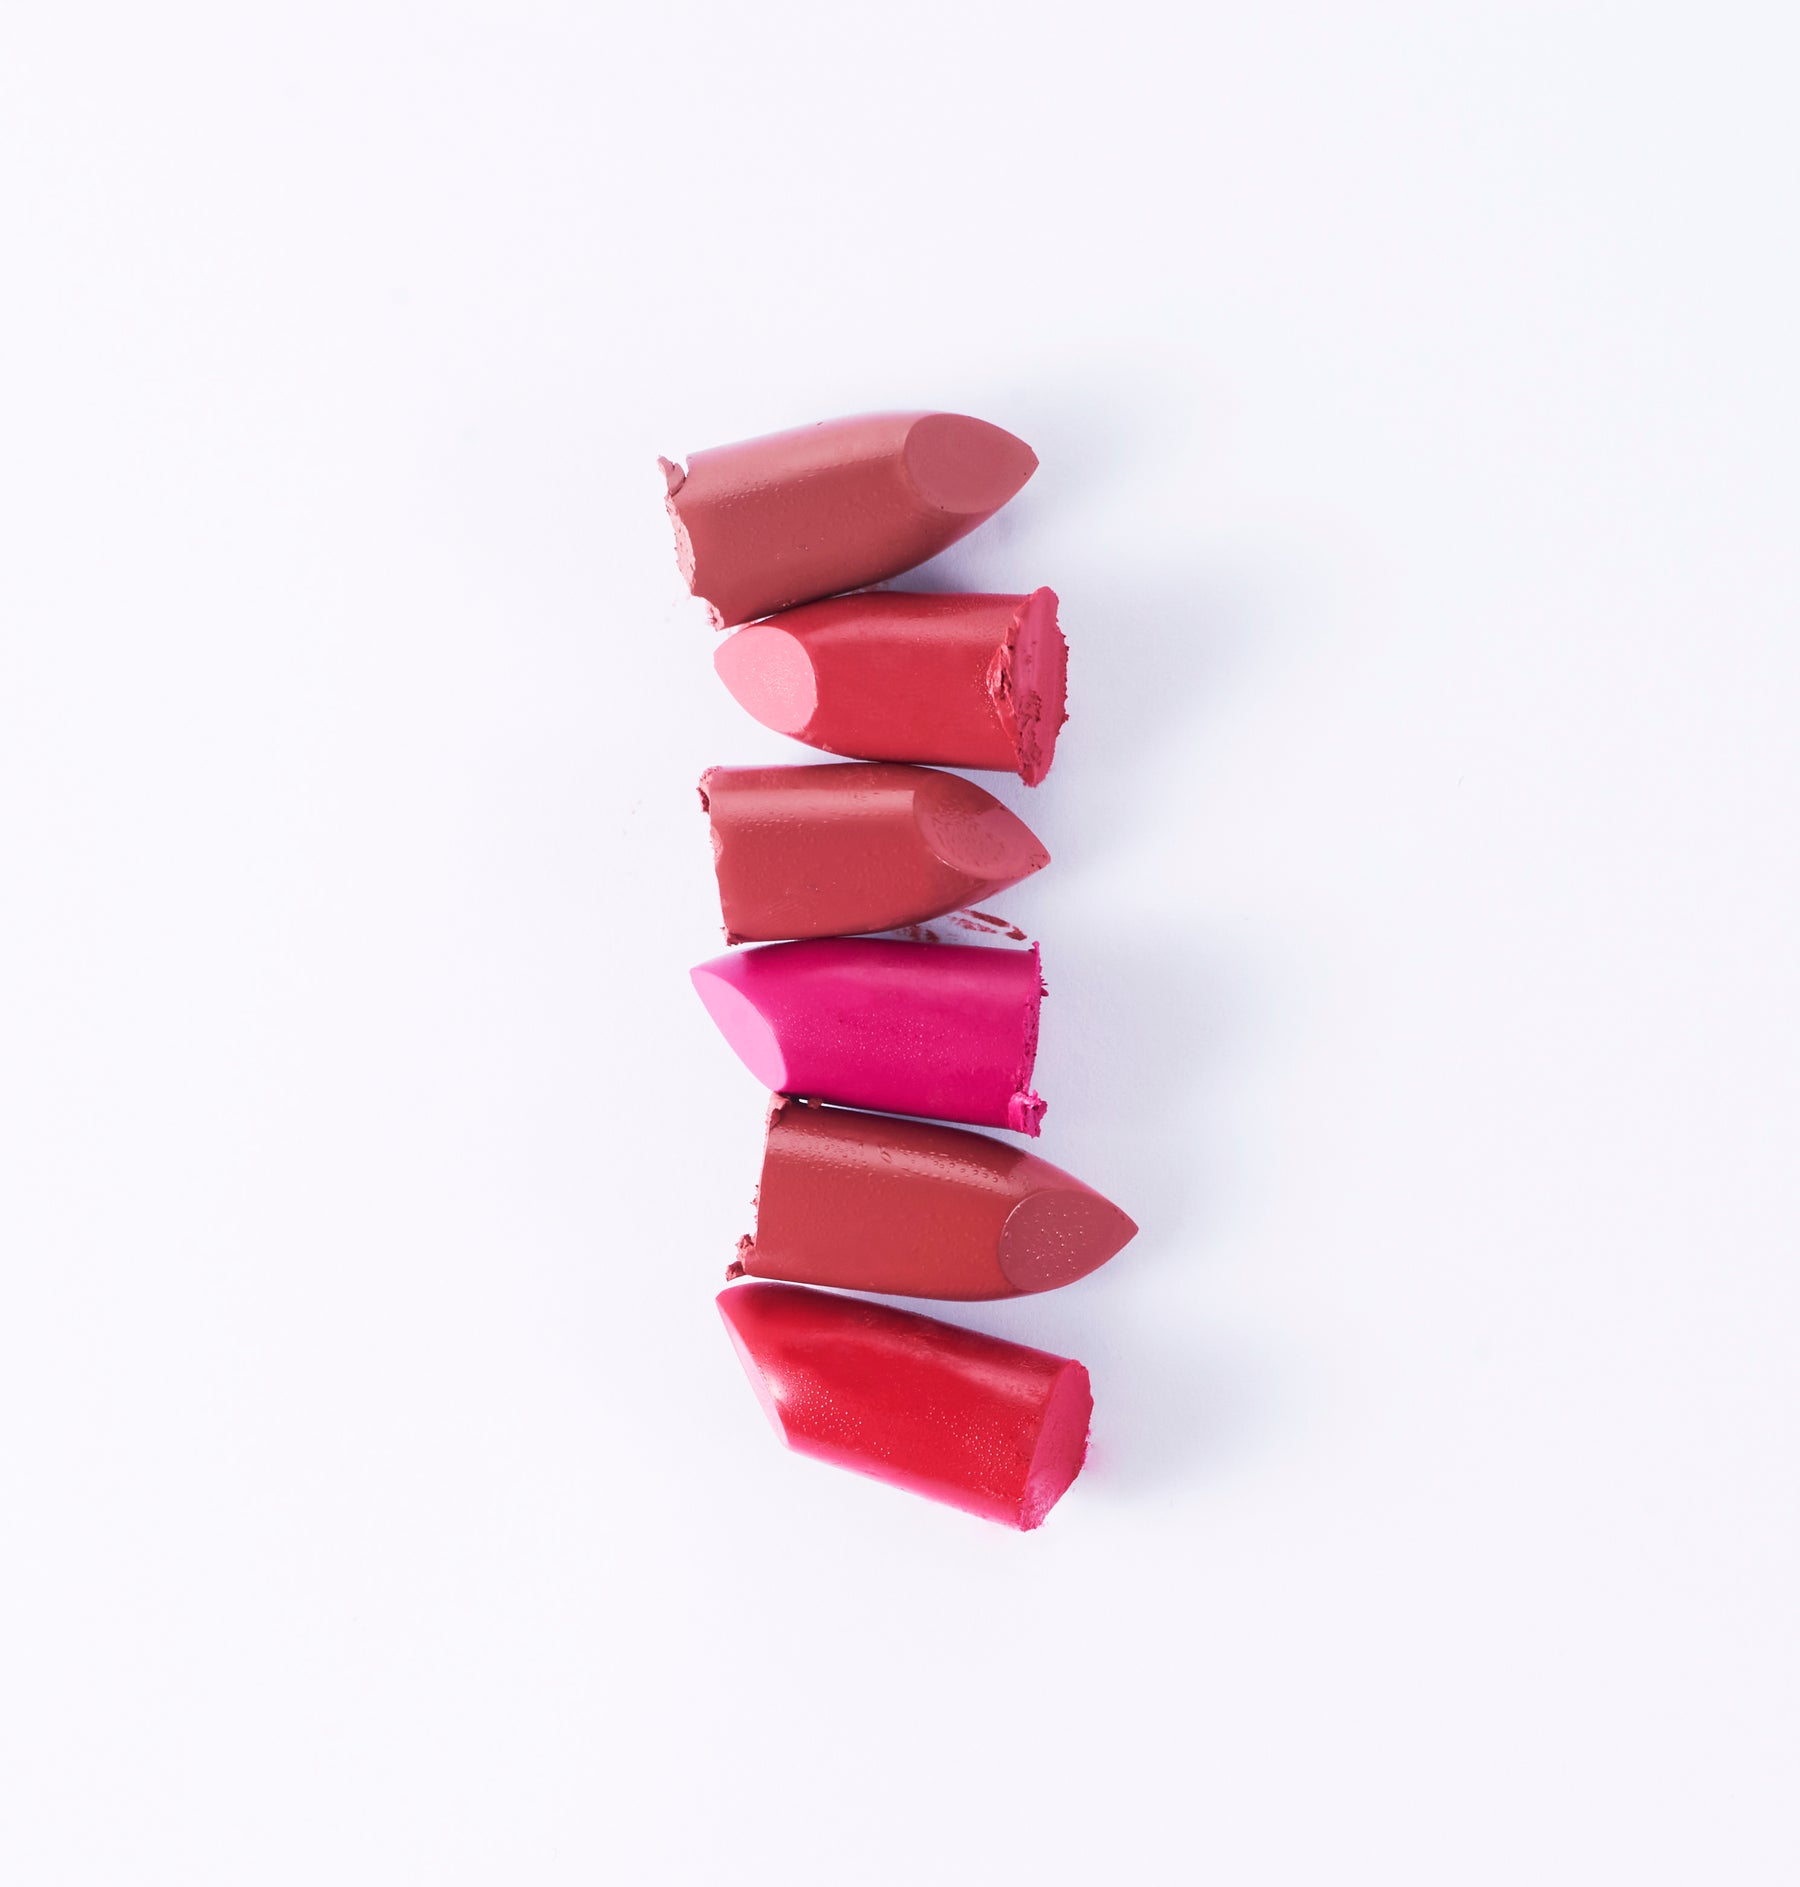 Coral reef vegan lipstick - Regal Tang